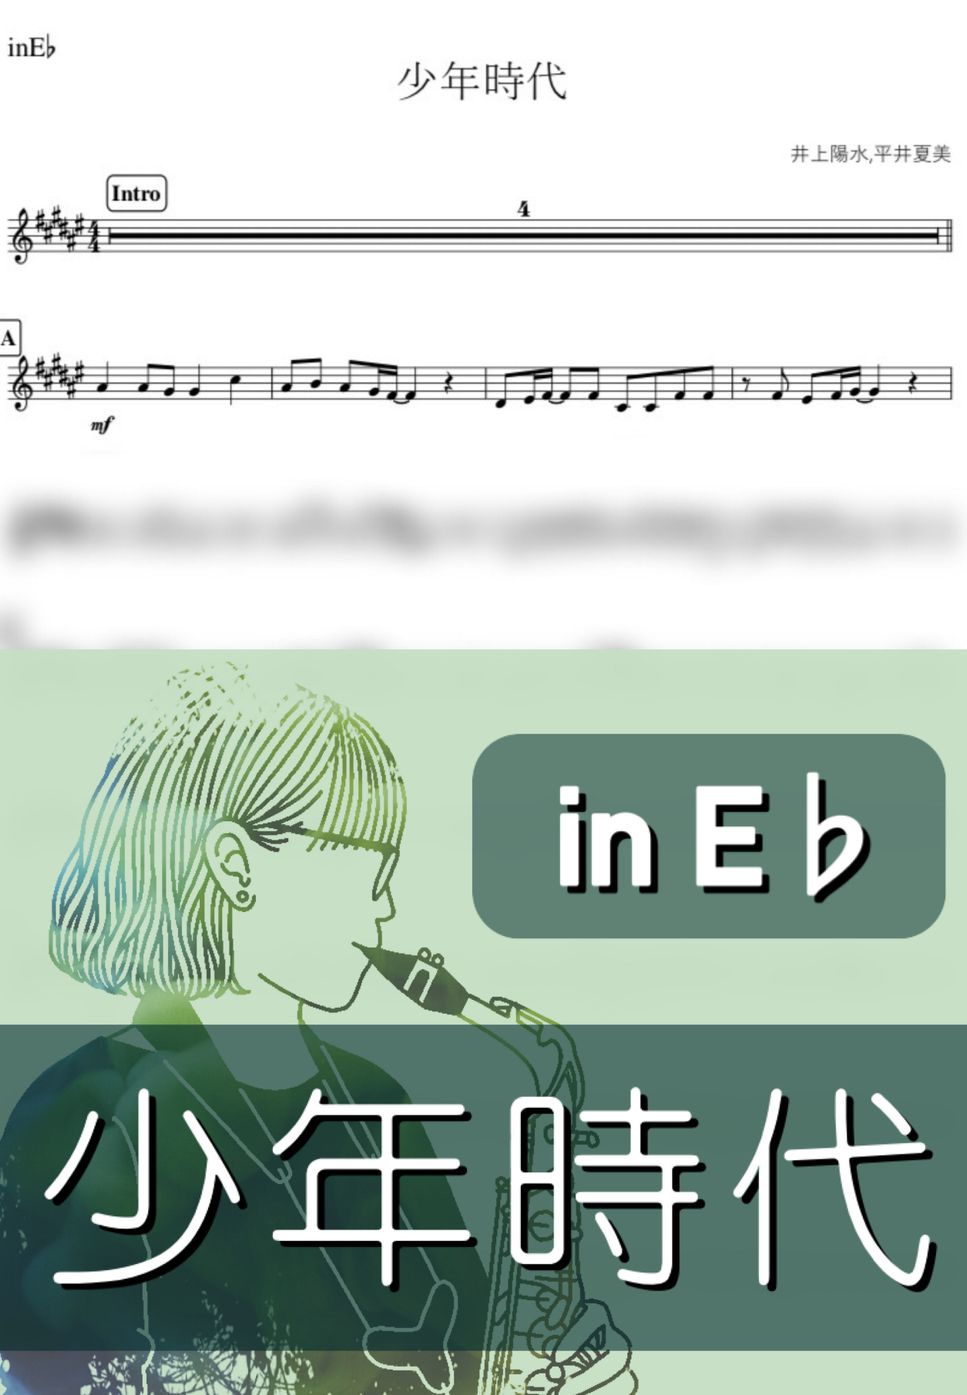 井上陽水 - 少年時代 (E♭) by kanamusic